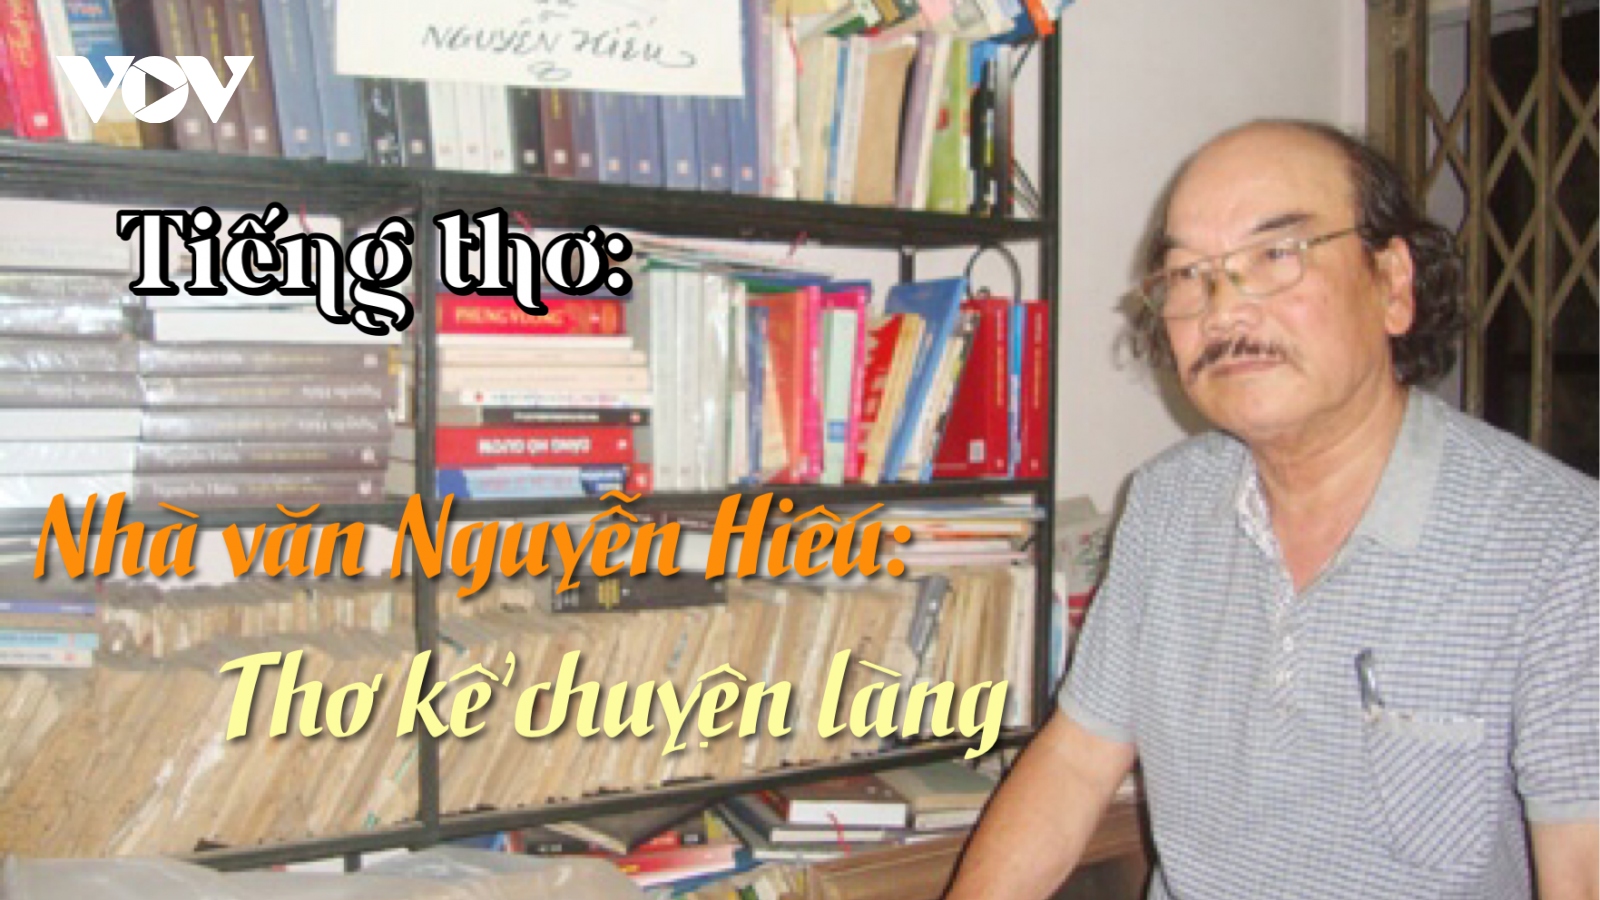 Nhà văn Nguyễn Hiếu - Thơ kể chuyện làng